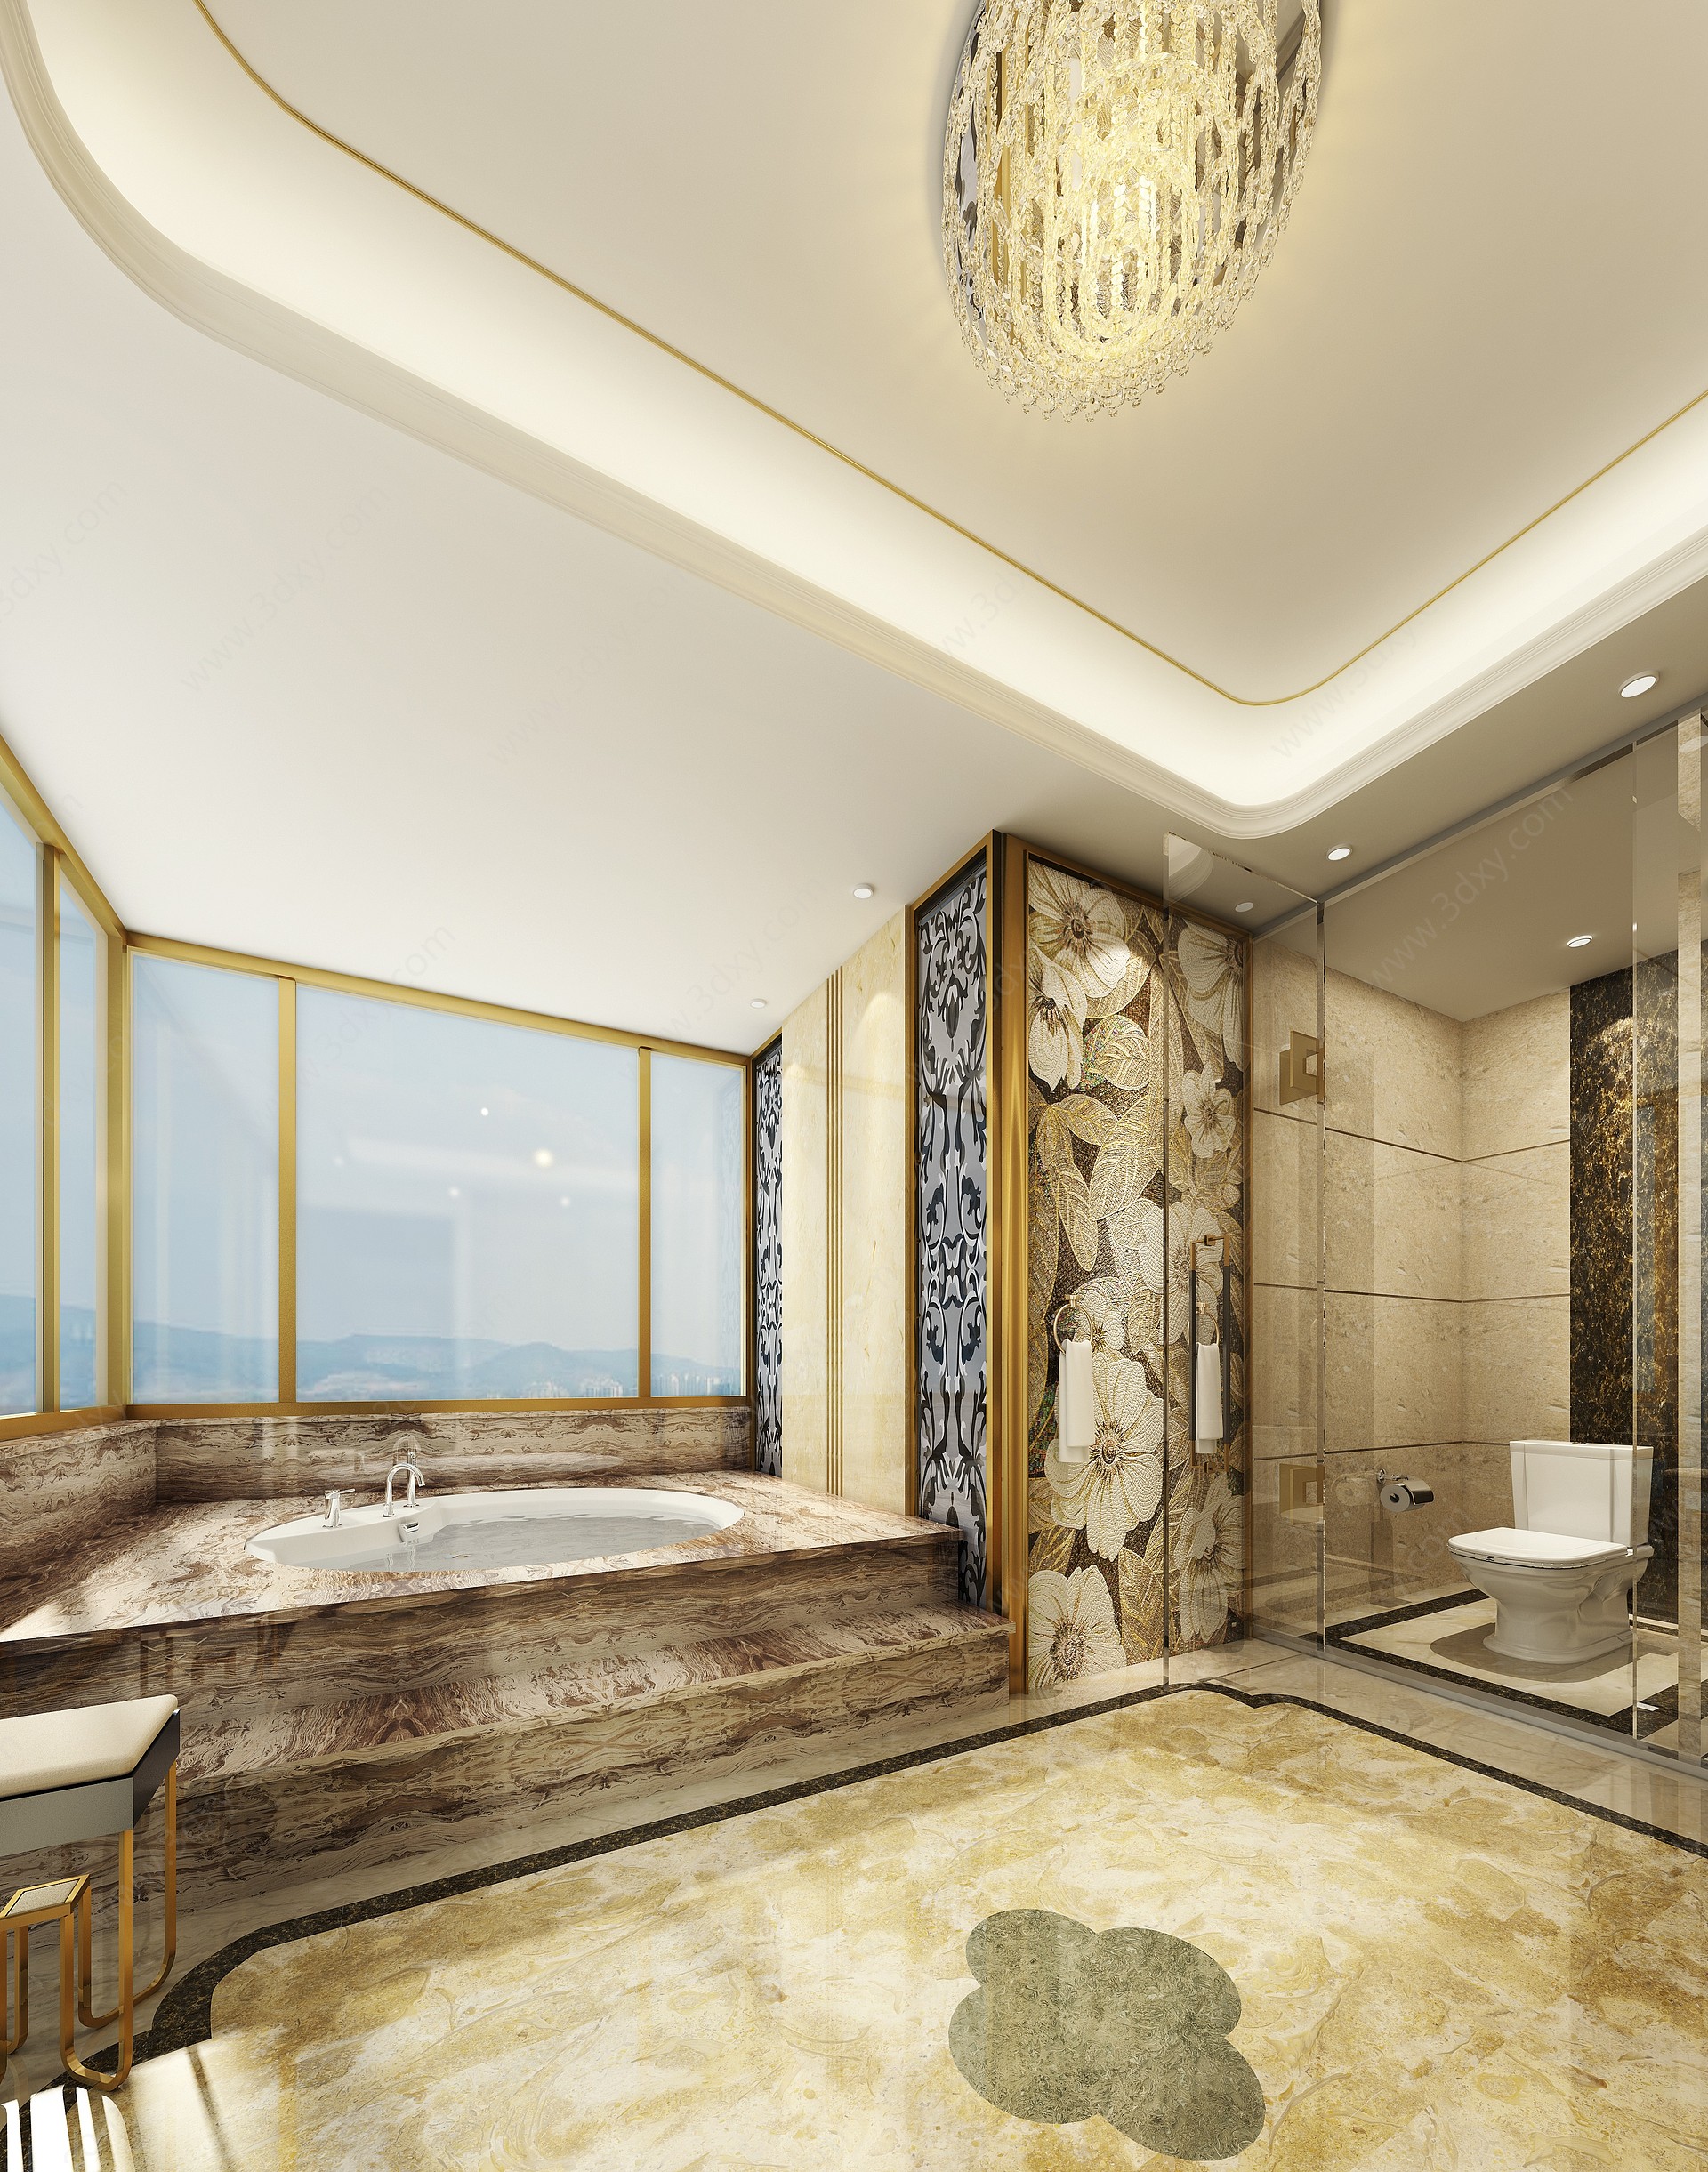 奢华酒店总统套房浴室间3D模型